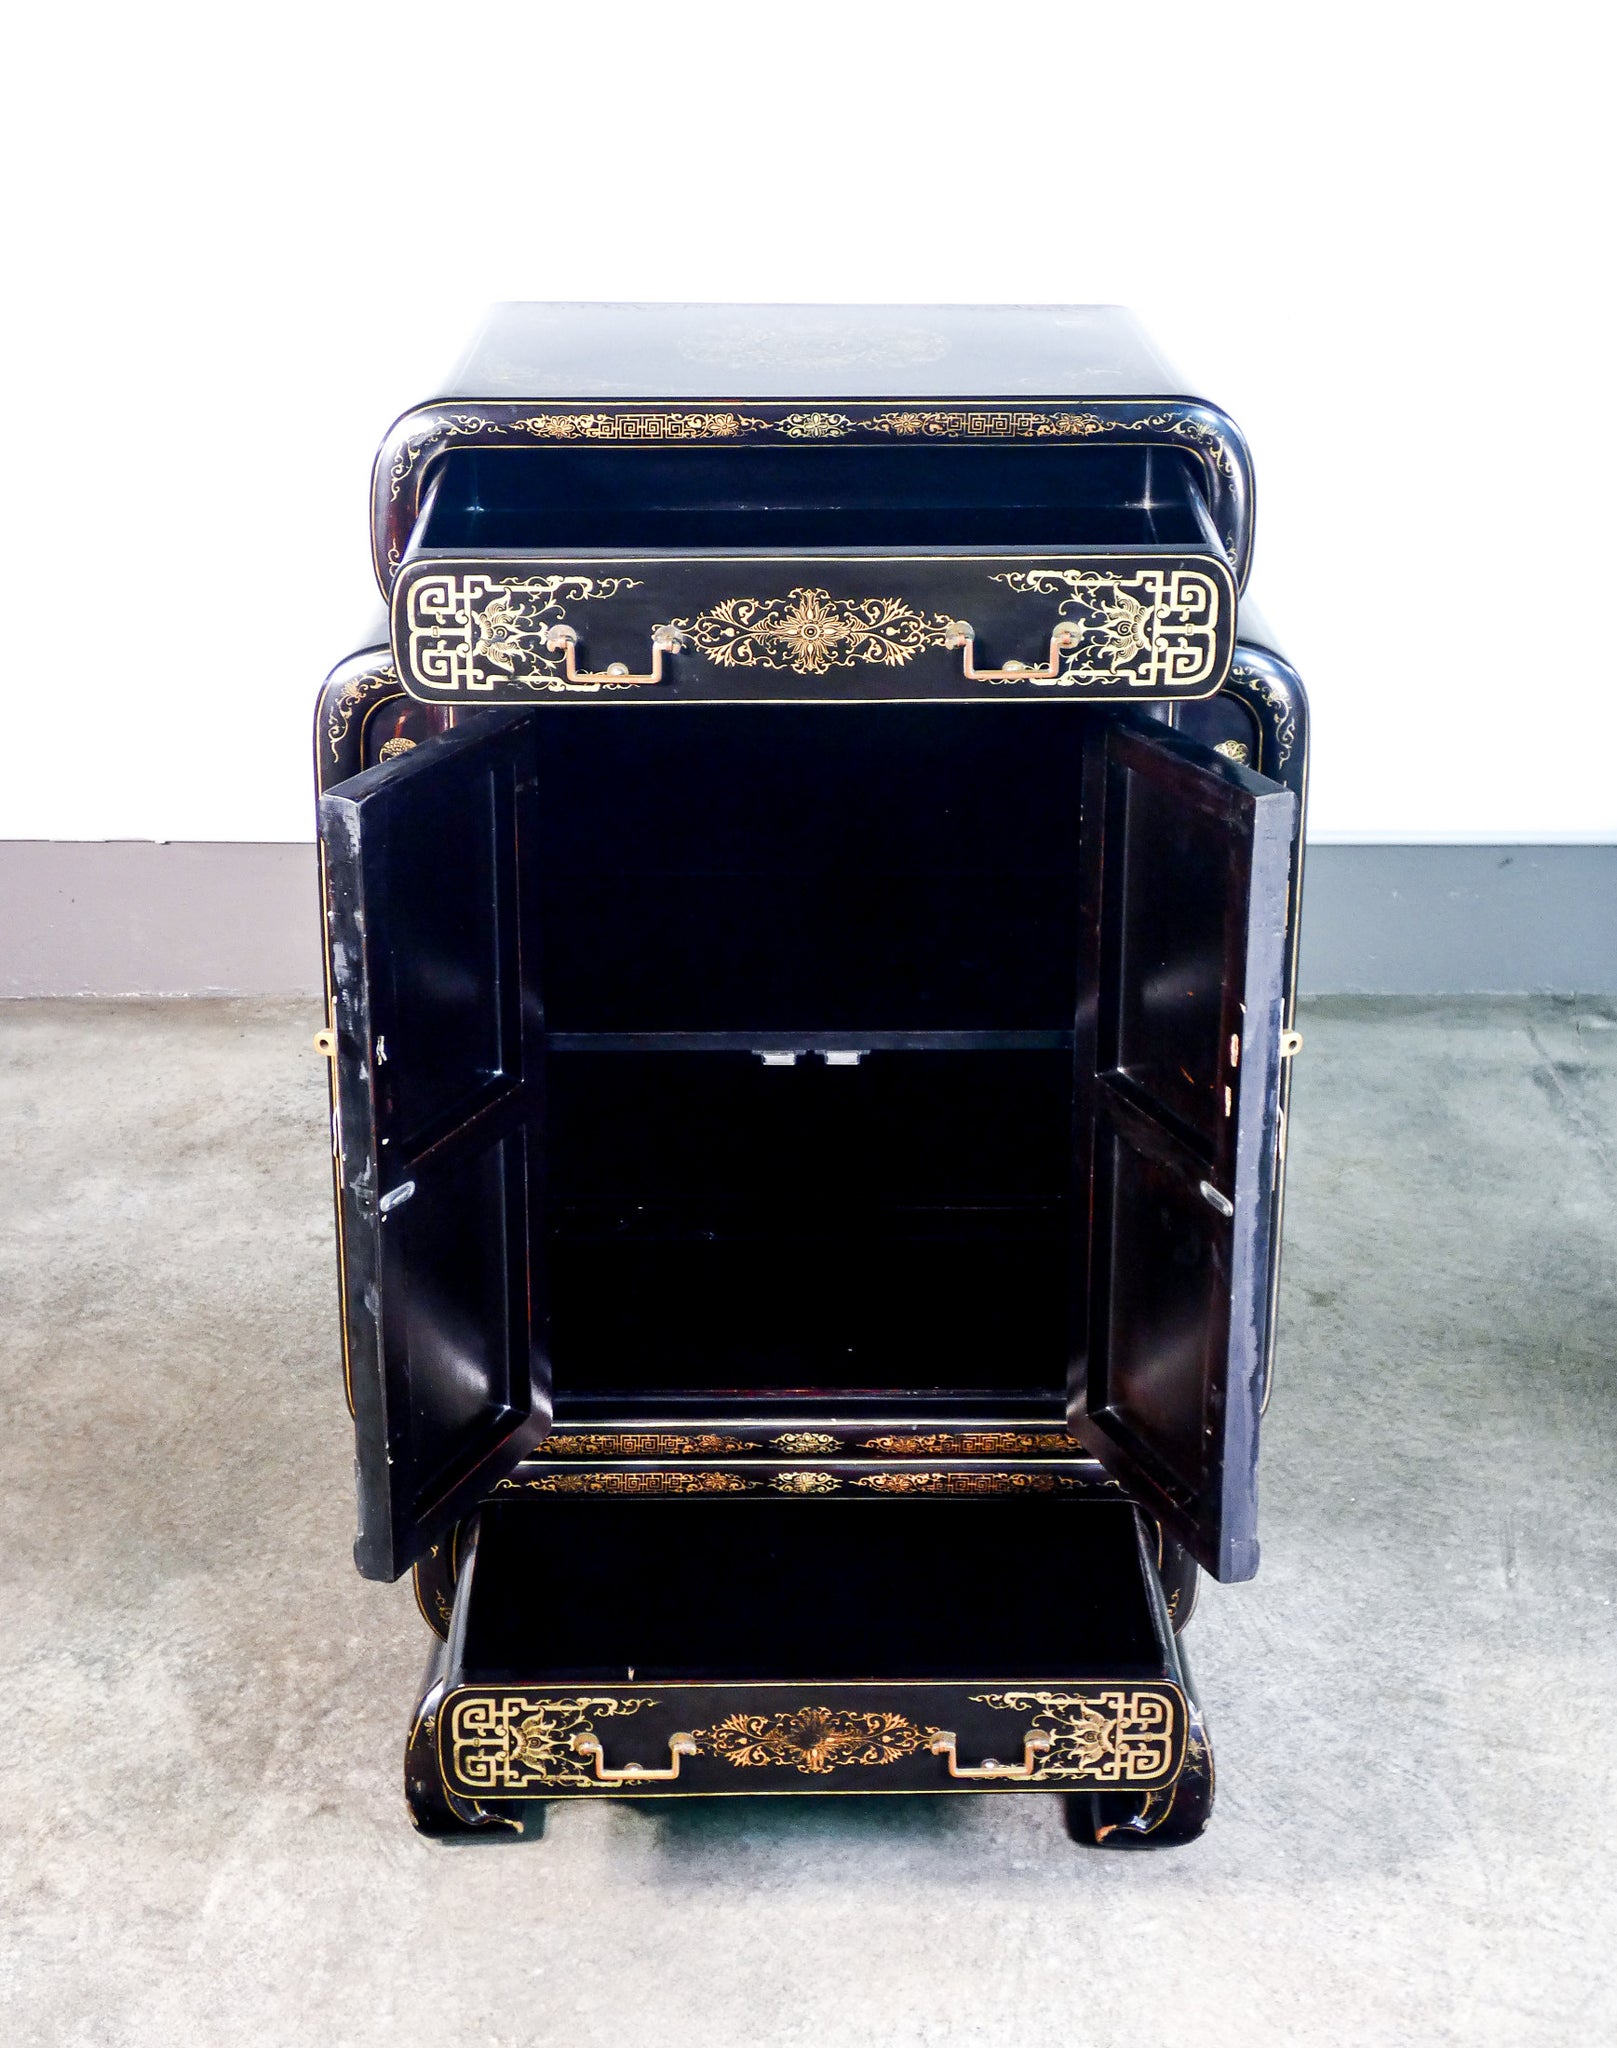 credenza cinese legno laccato nero intarsiato cina xx sec pietra cassetti